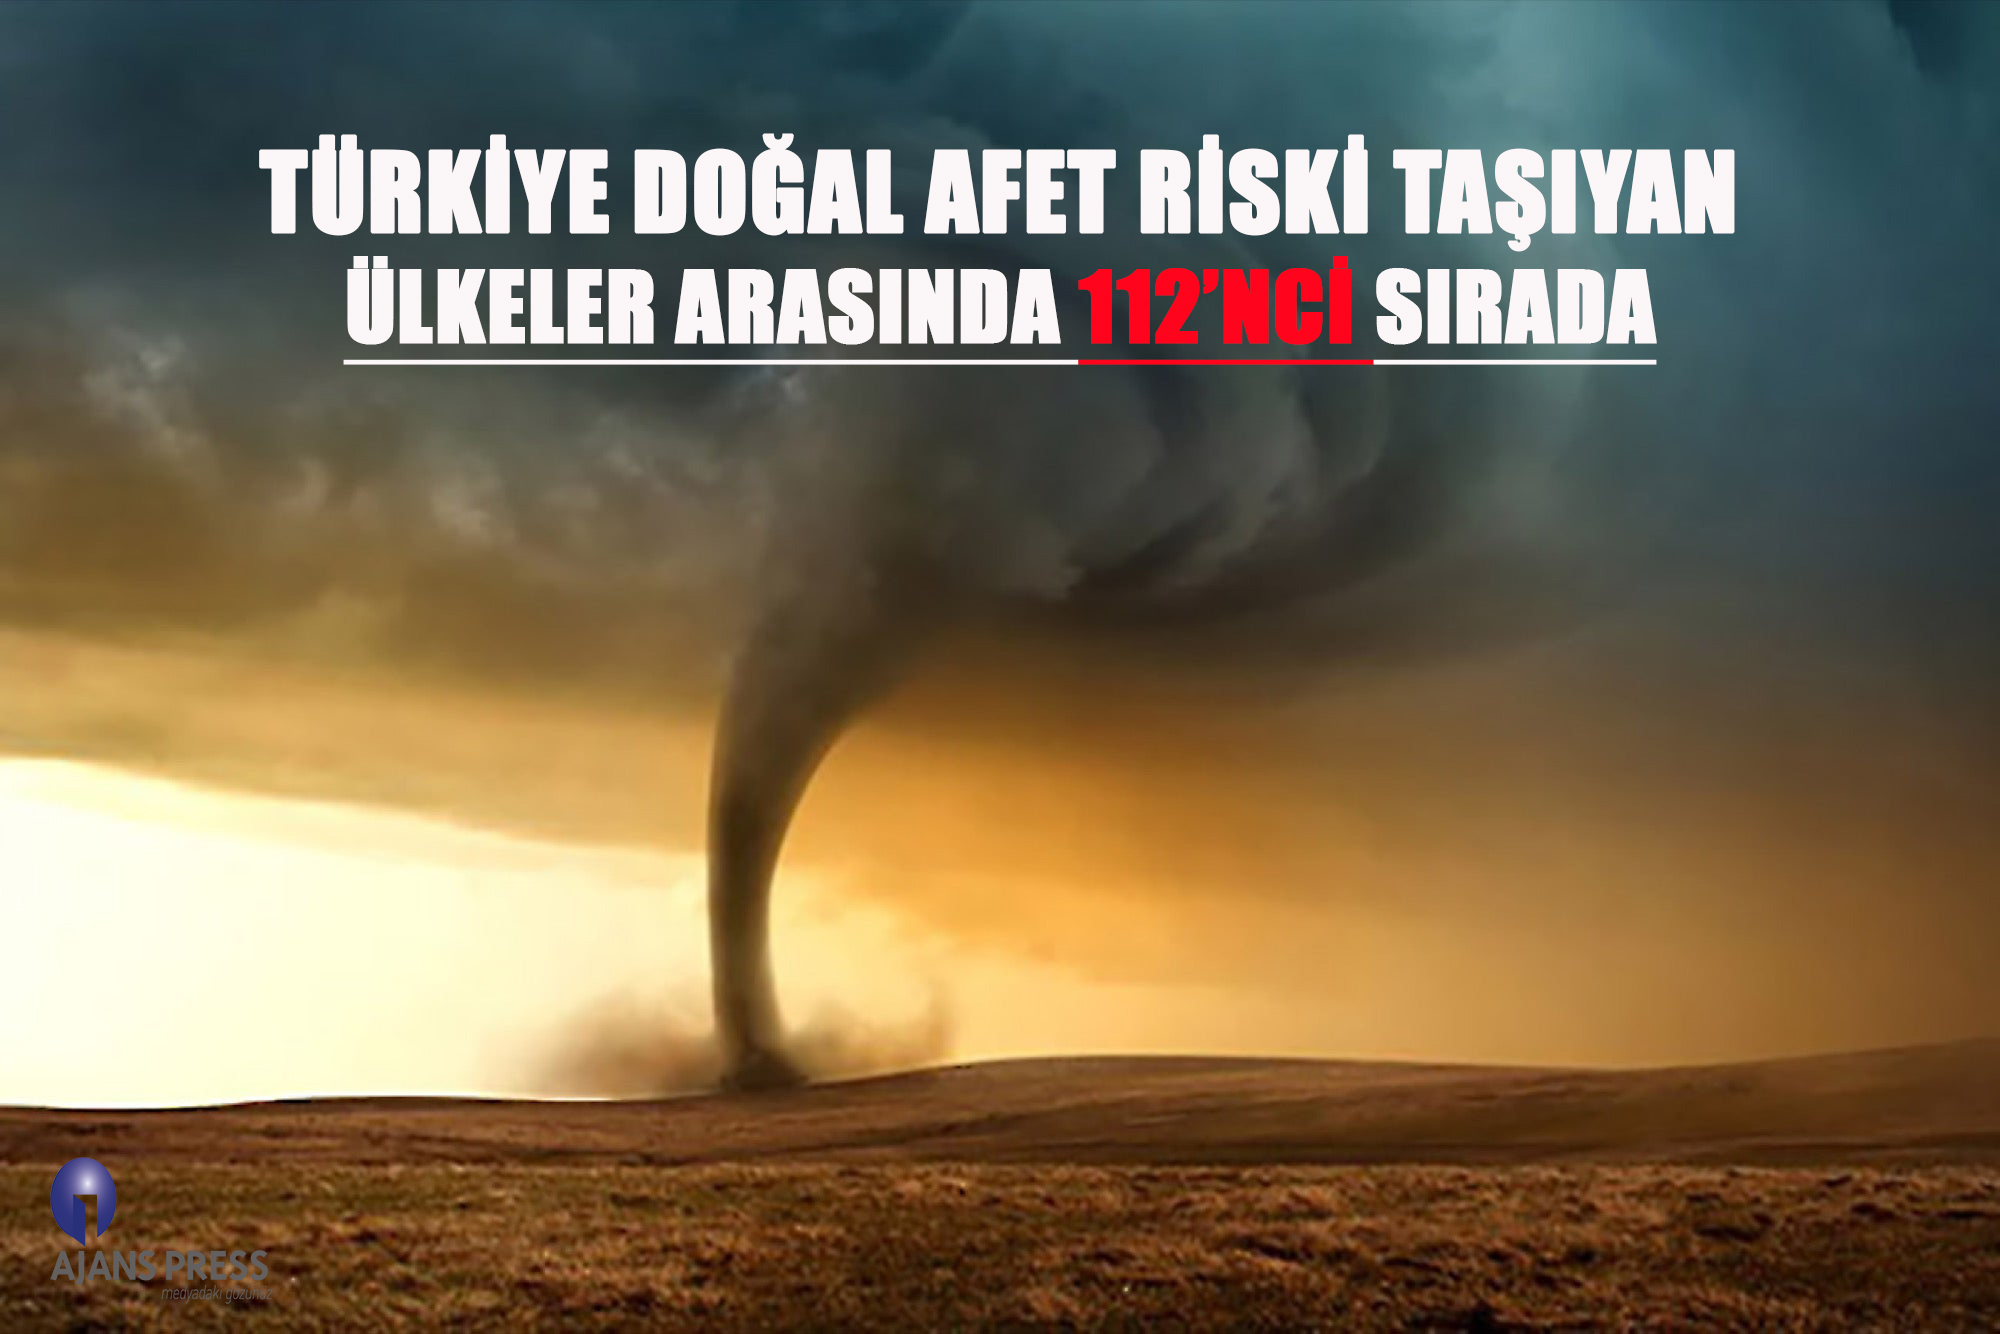 eğirdir haber,akın gazetesi,egirdir haberler,son dakika,Türkiye Doğal Afet Riski Taşıyan Ülkeler Arasında 112’ncı Sırada